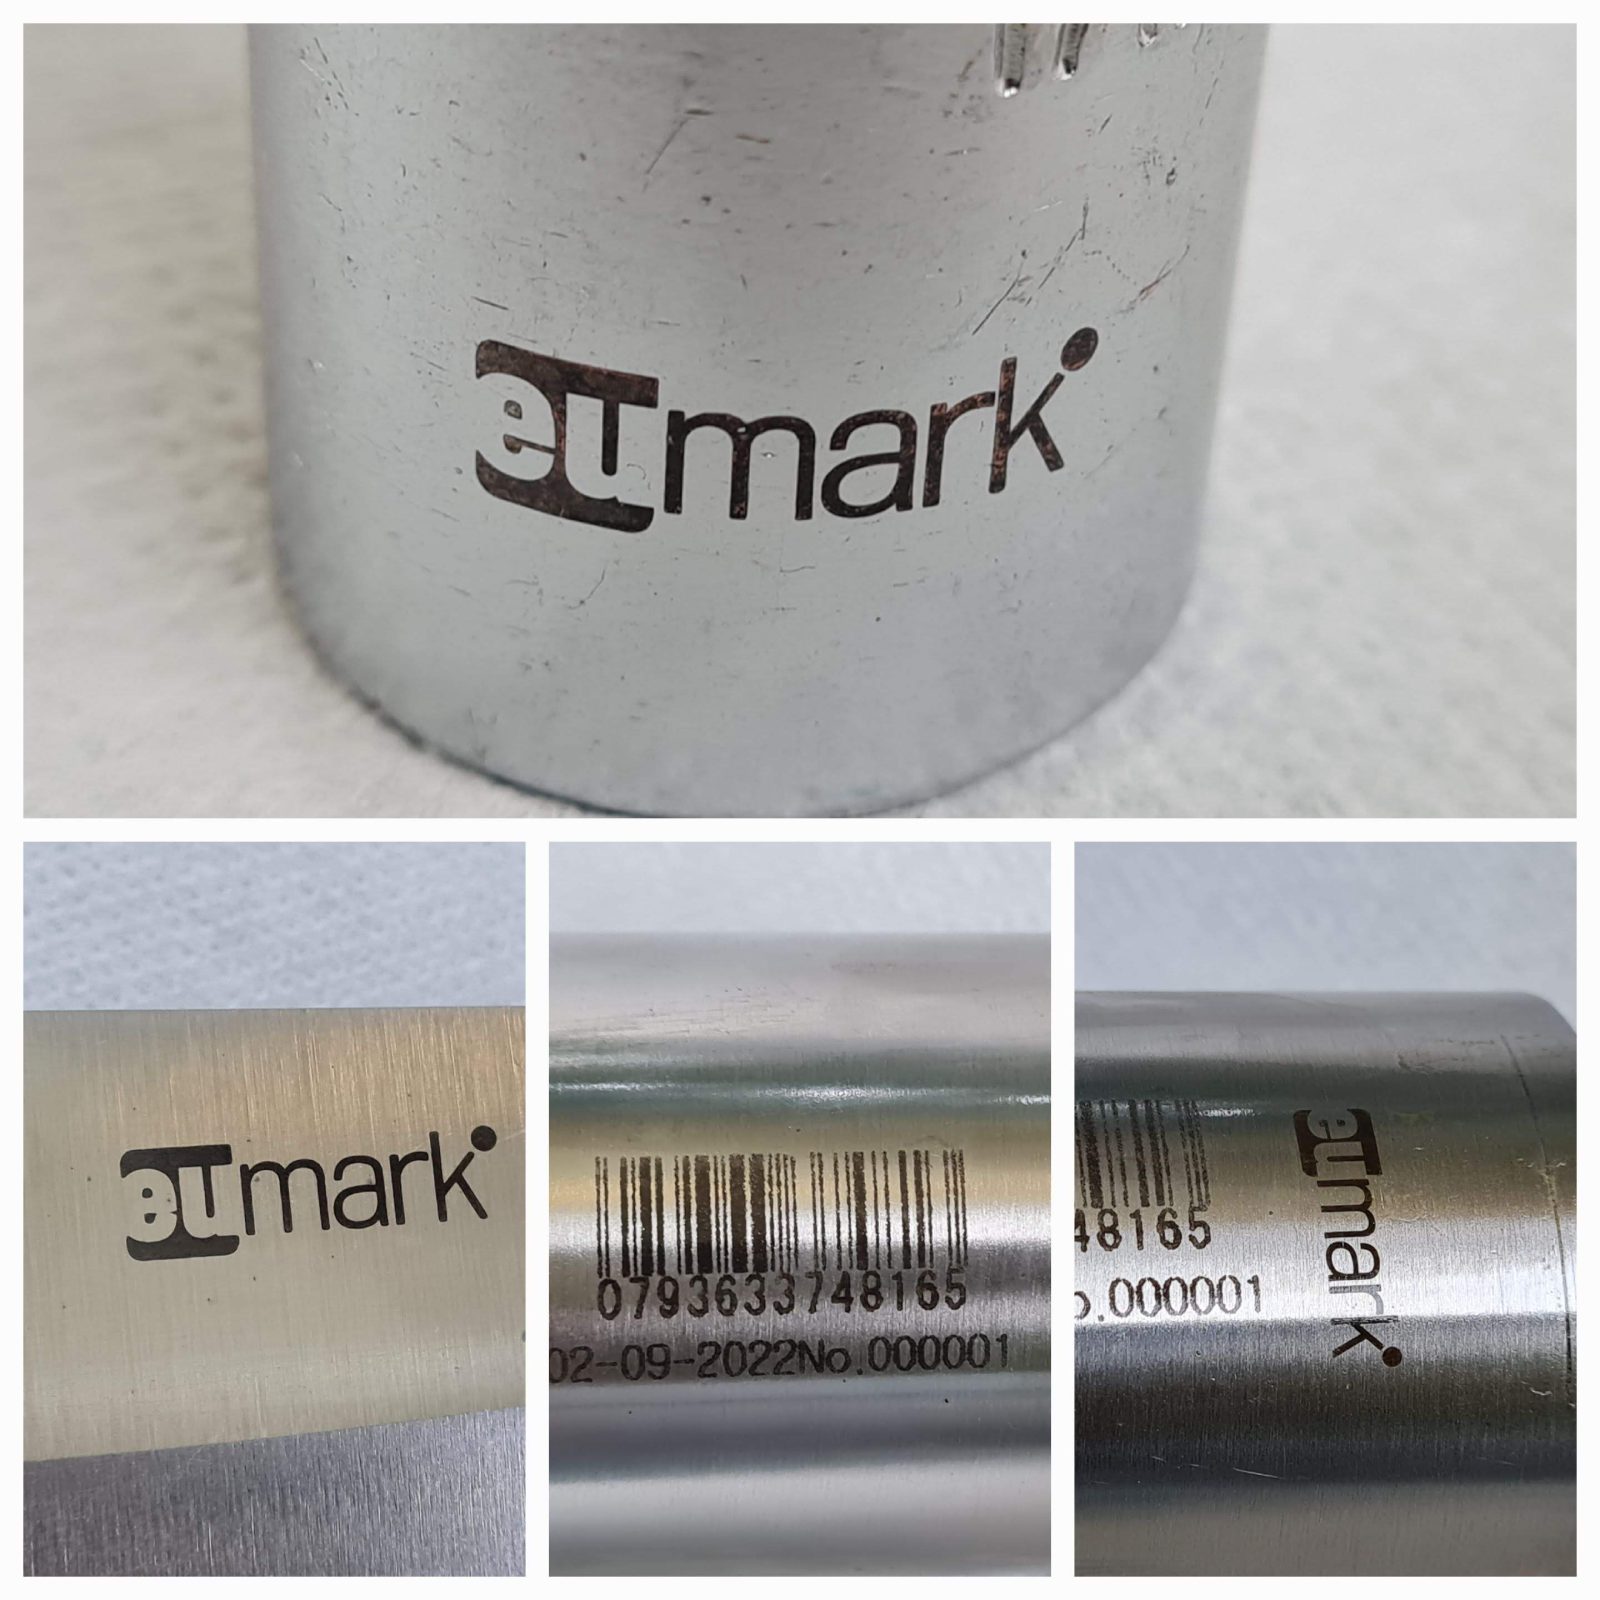 Electro Chemical Marking and Etching Machine EUmark Set 03 – Oz Robotics